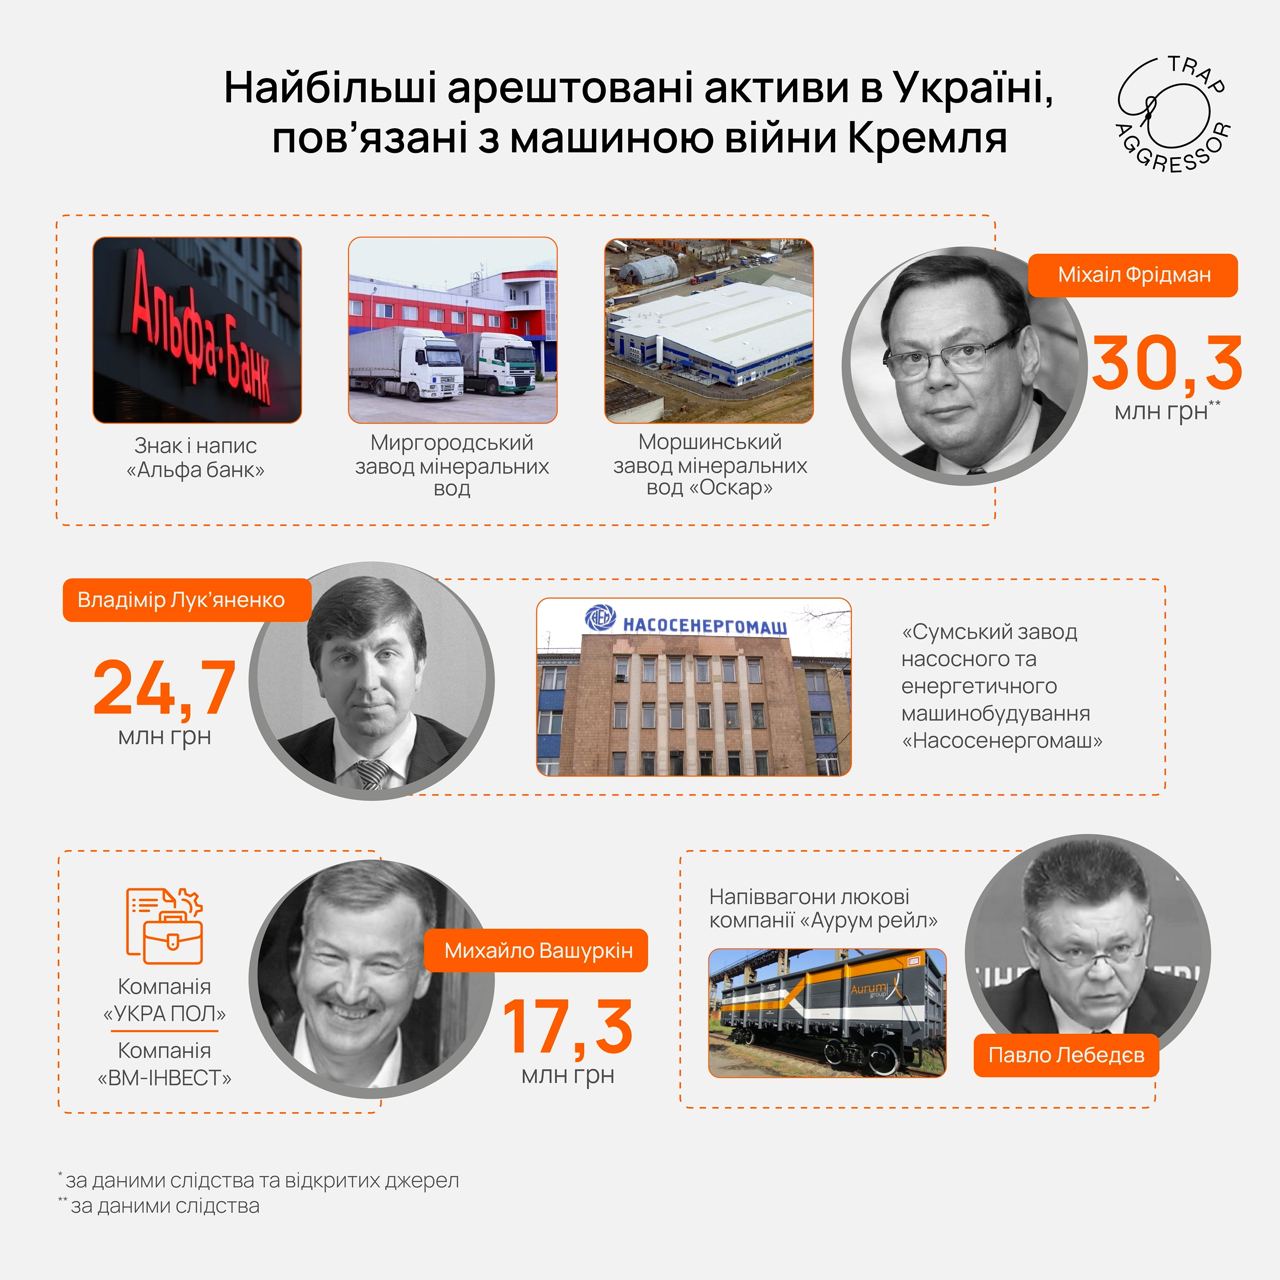 Украинские предприятия российских олигархов, которые